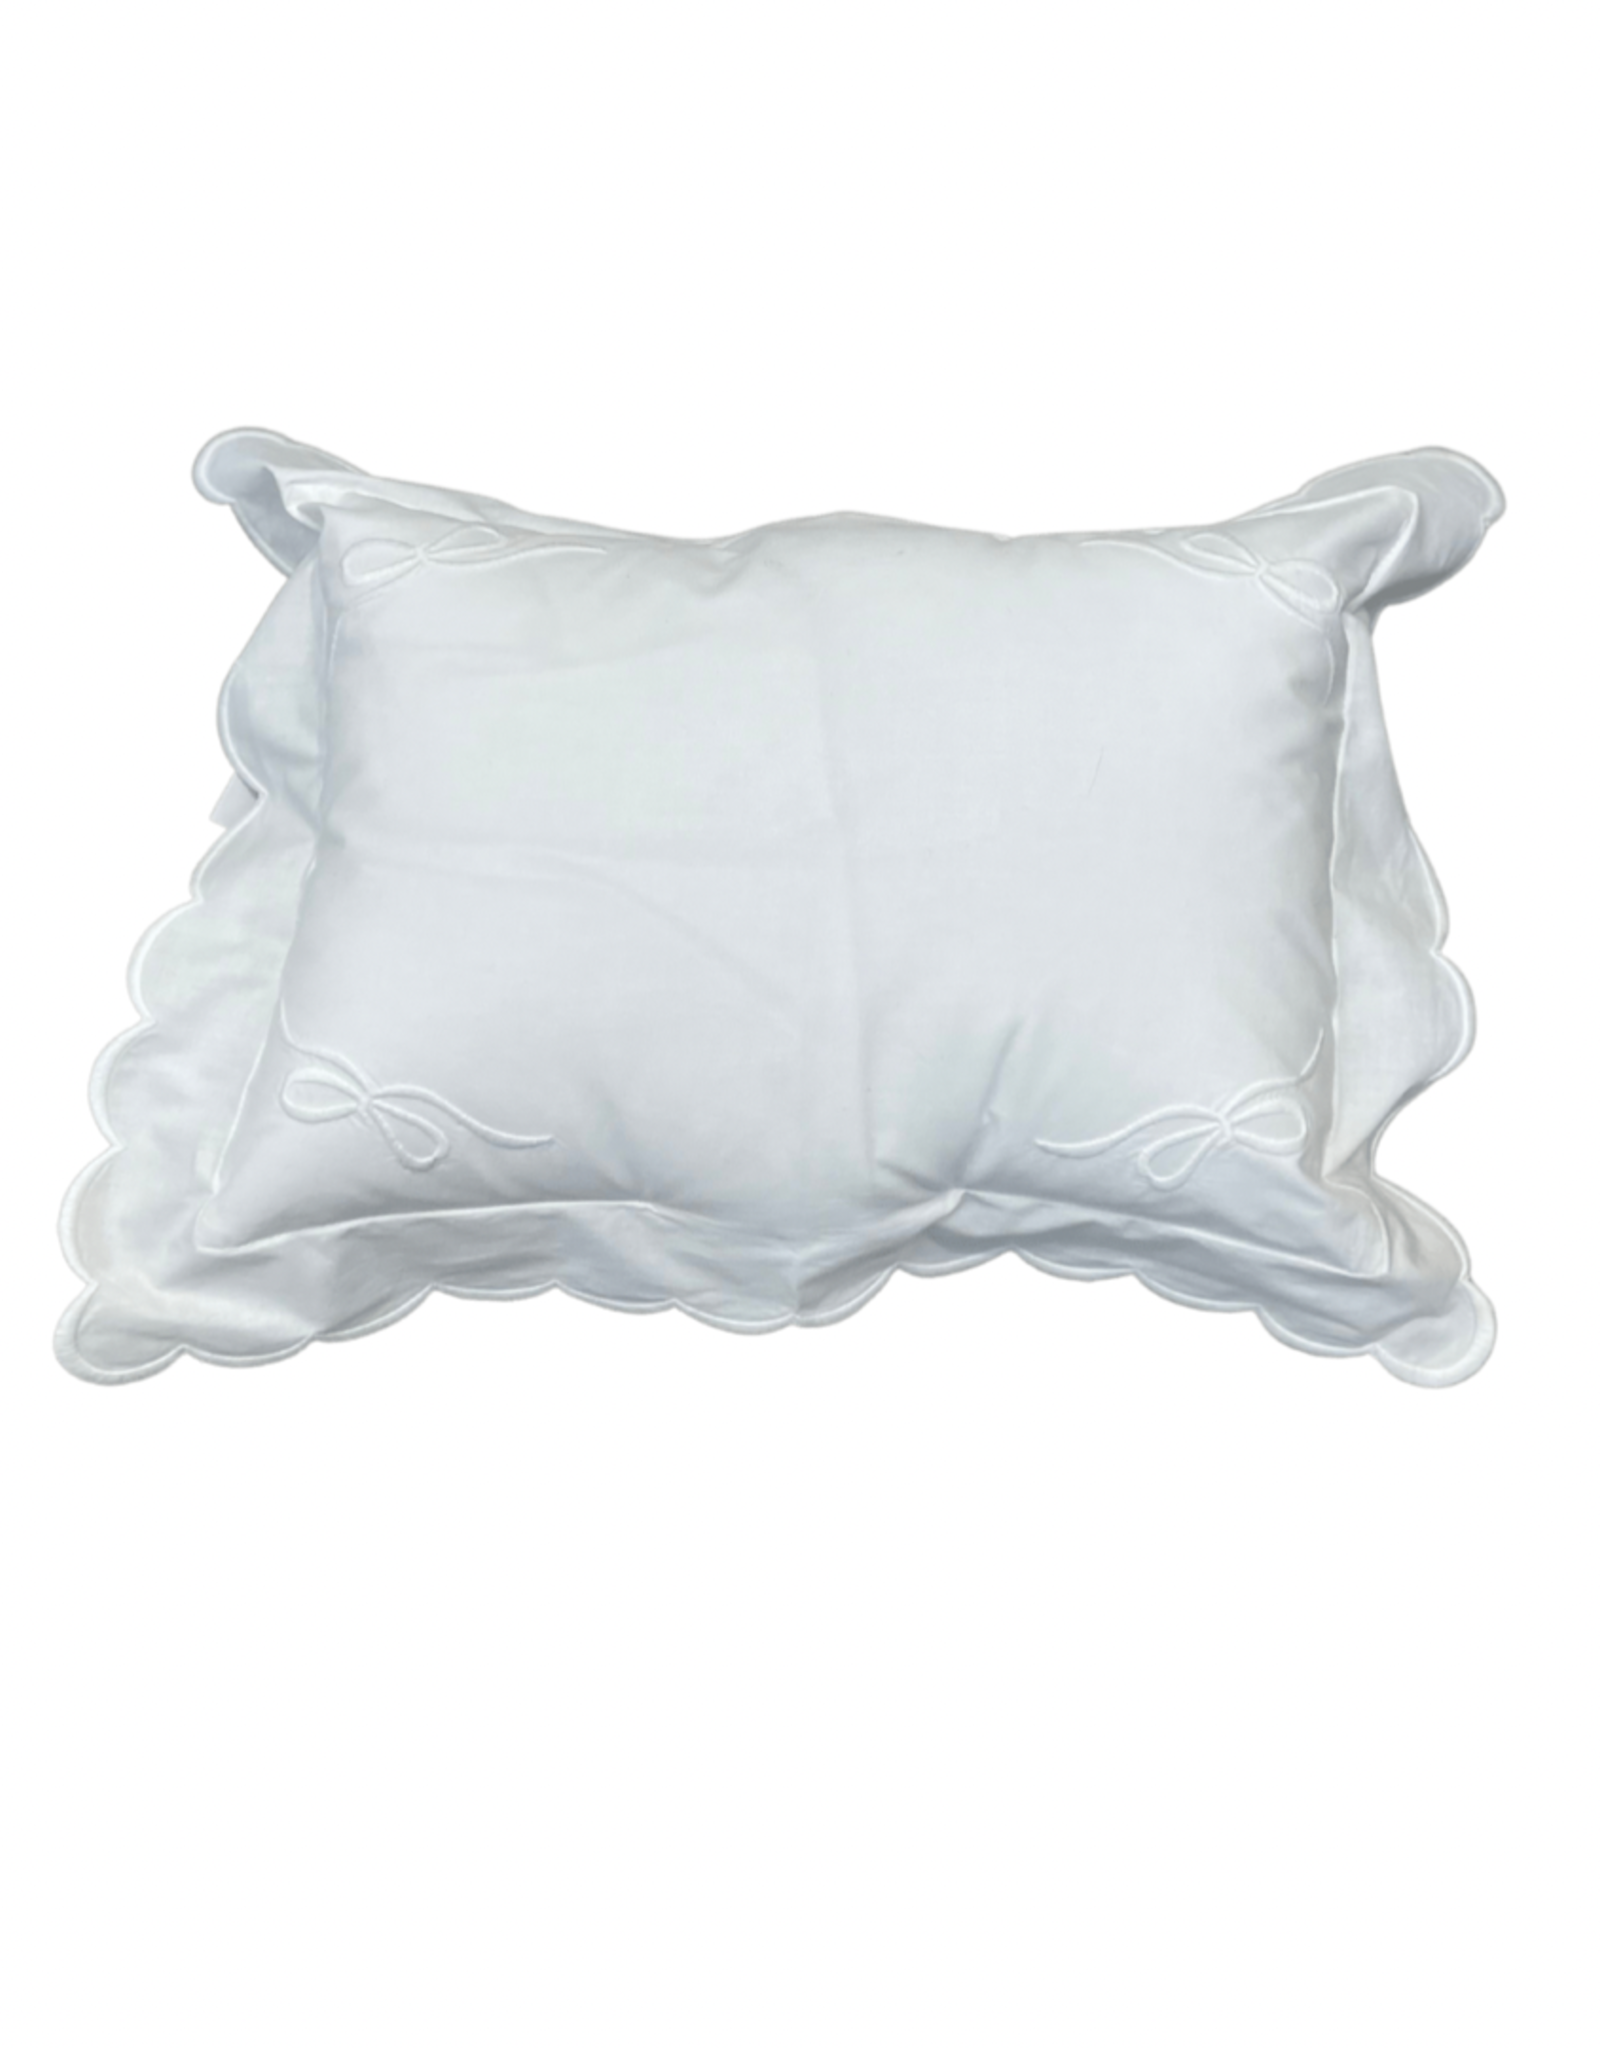 White Four Bows Monogram Pillow with Insert 10x14